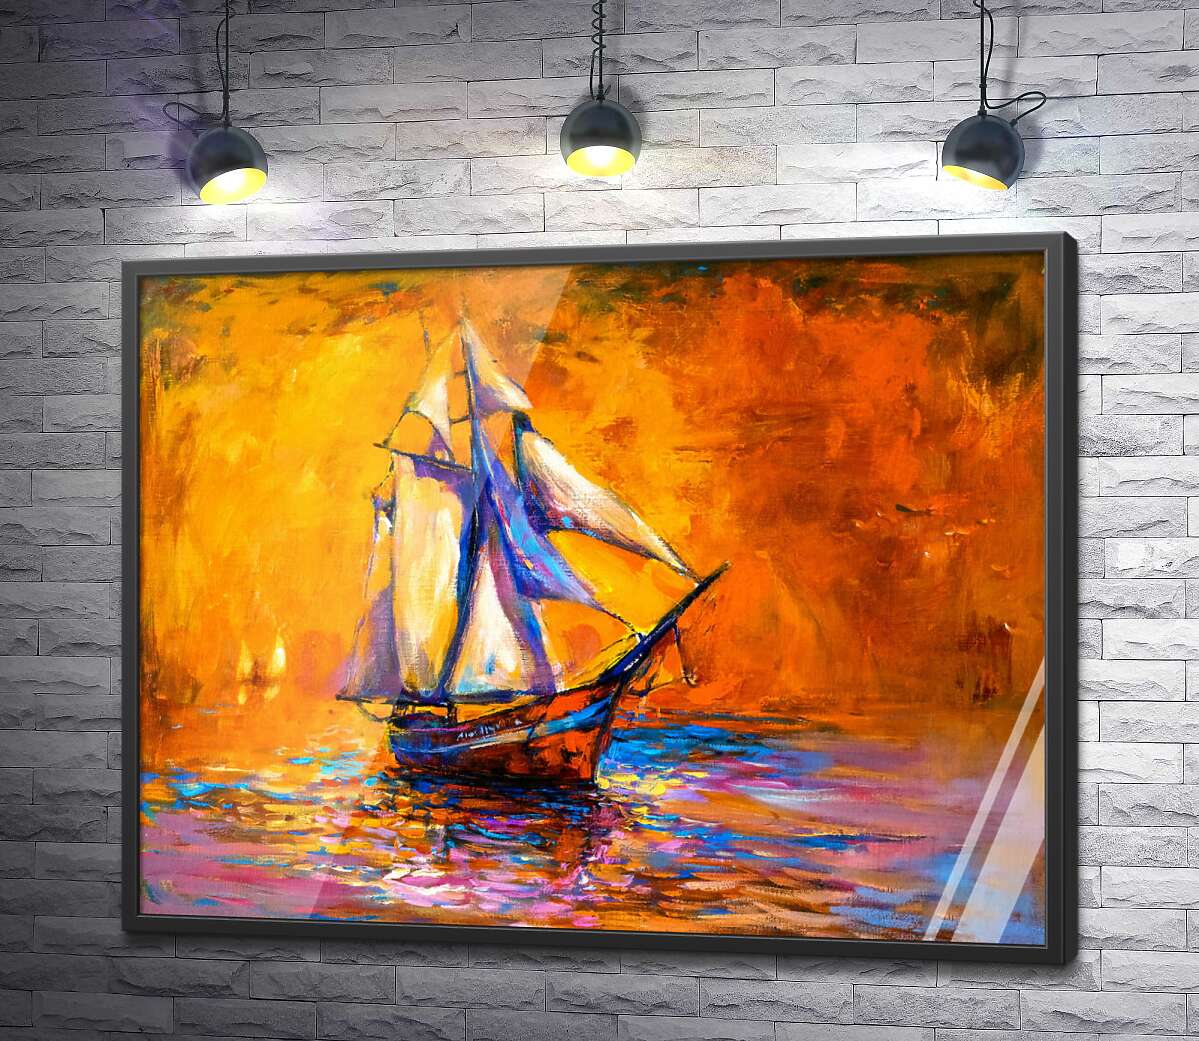 постер Одинокий корабль плывет по воде на фоне горящего желтого неба